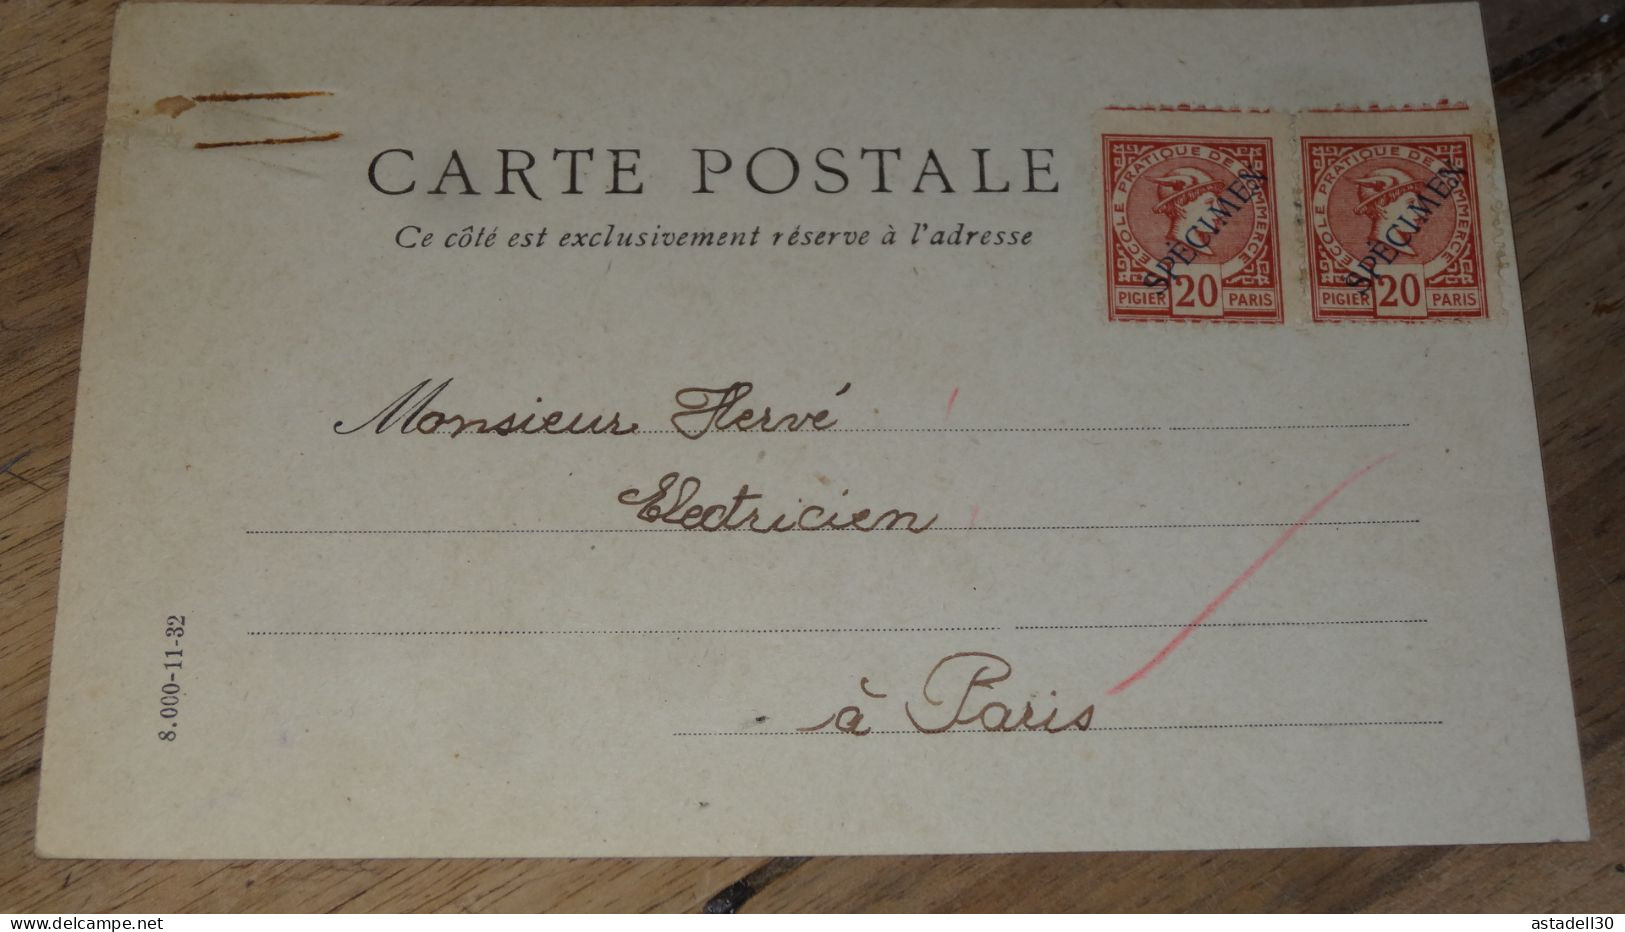 Carte Postale Fictif, Specimen, Ecole Commerce, Paire De 20c - 1934 ......... ..... 240424 ....... CL-12-10 - Phantomausgaben